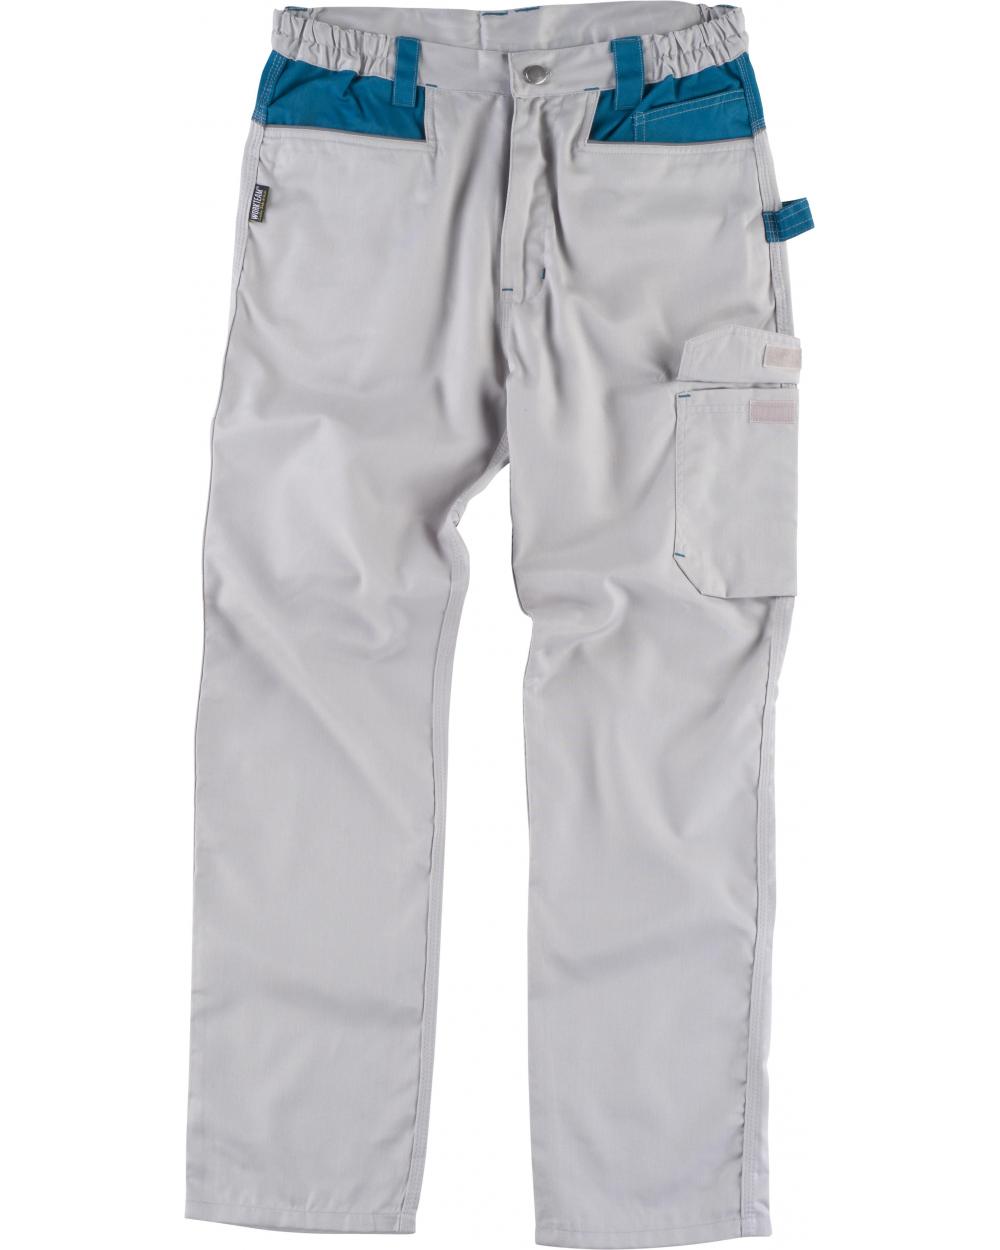 Comprar Pantalon combinado con refuerzos WF1050 Gris Claro+Azafata workteam delante